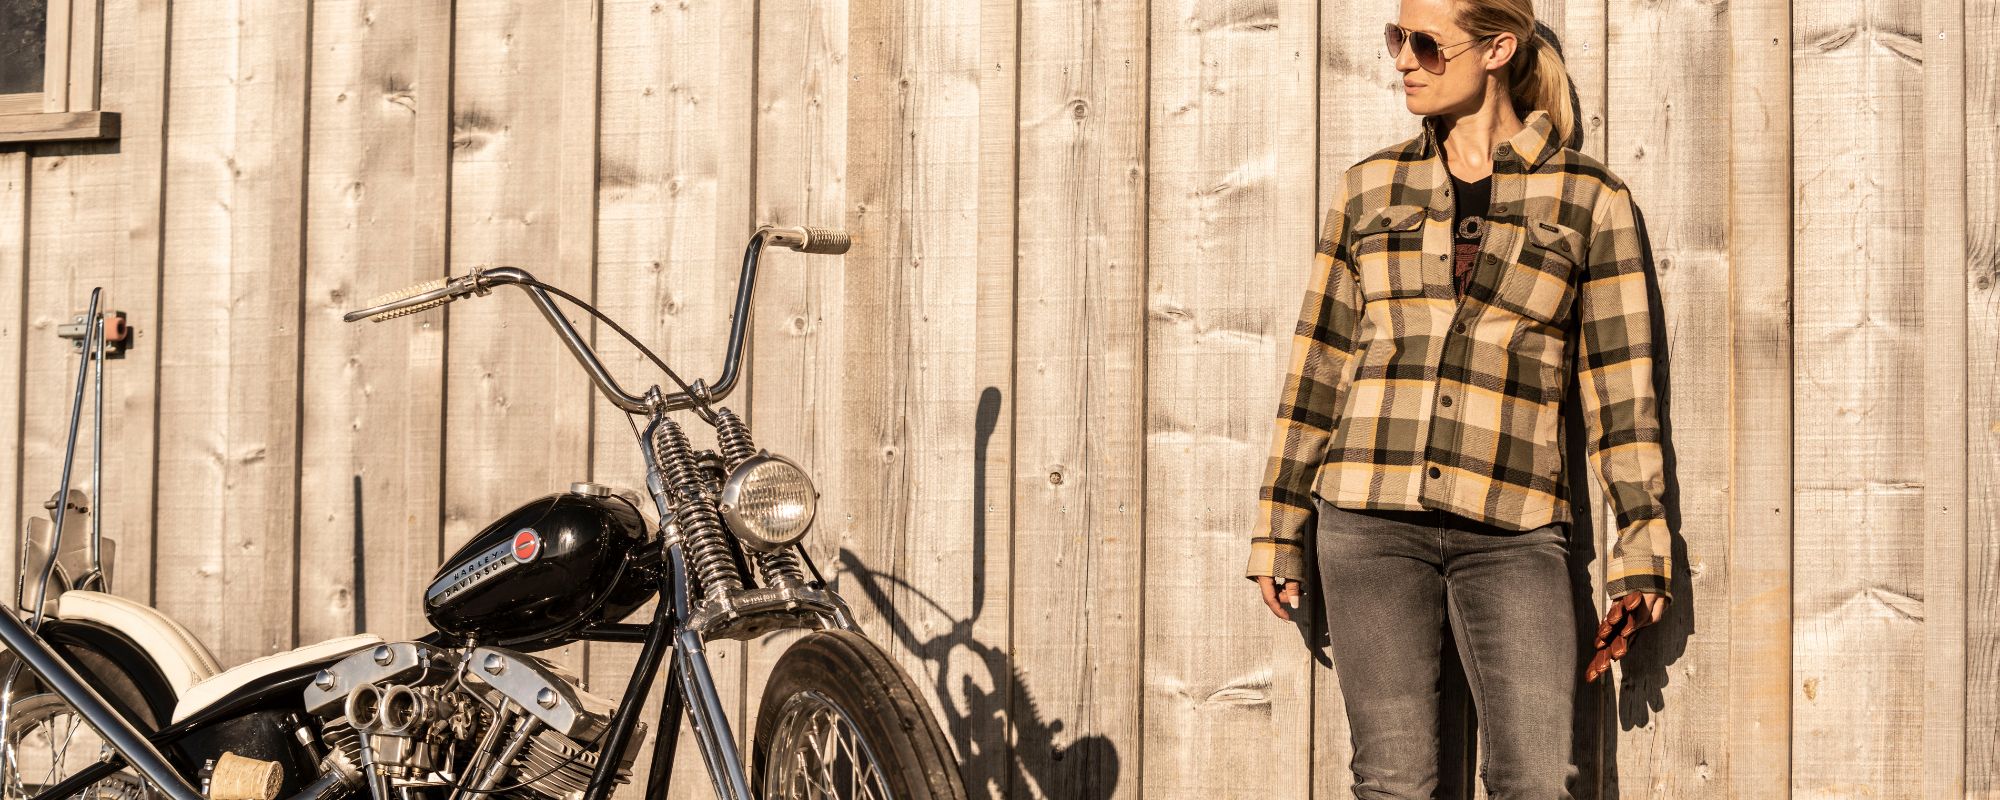 Die Schweizer Premium-Motorrad-Brand Rokker gibt wertvolle Tipps rund um das Thema Motorrad für Frauen.